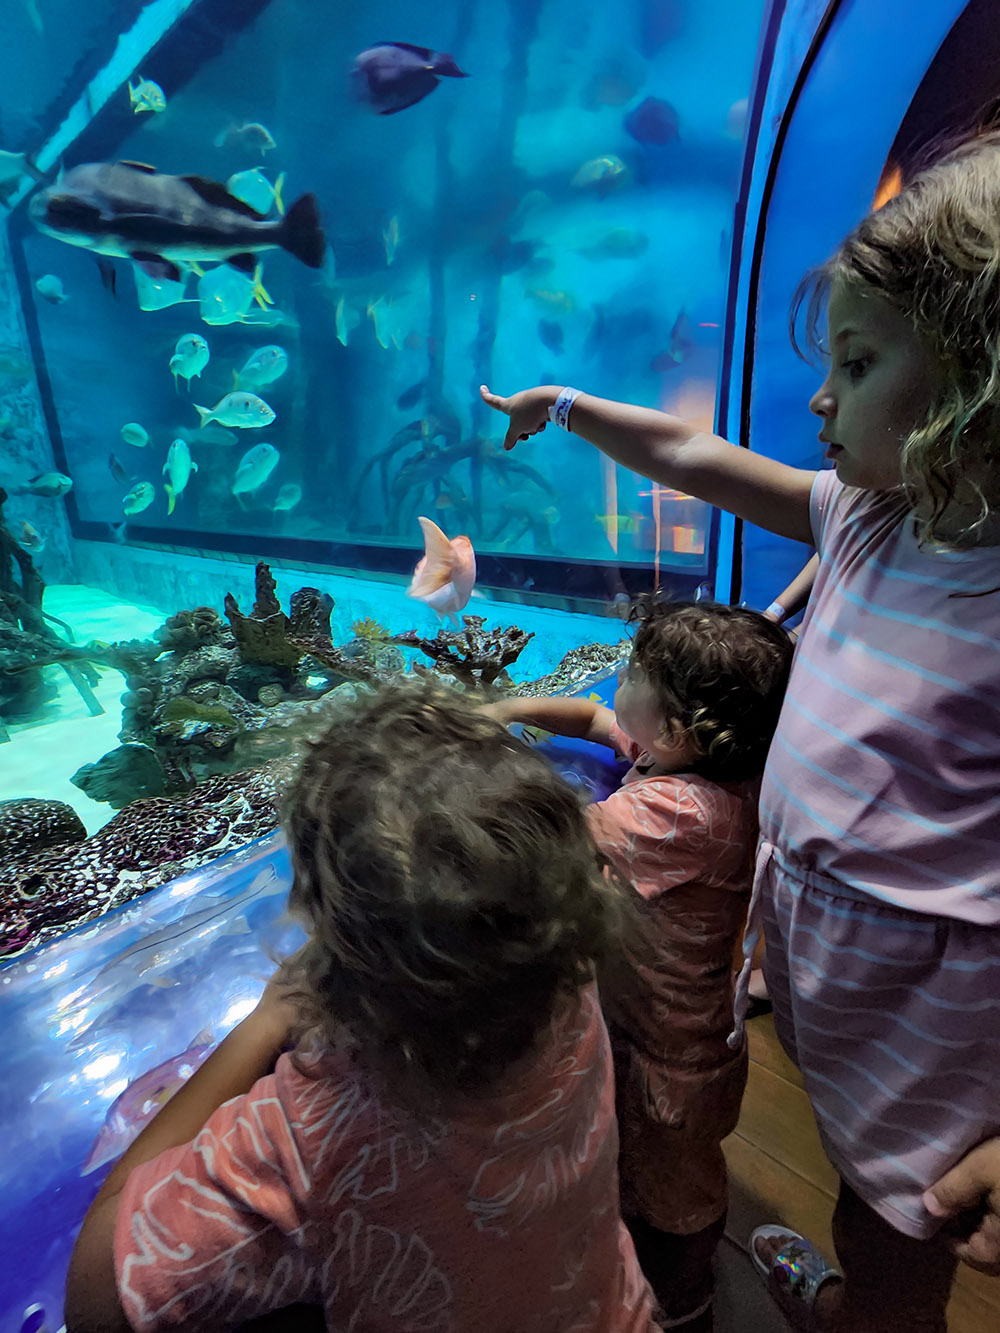 giant fish aquarium for kids at Tradewinds restaurant